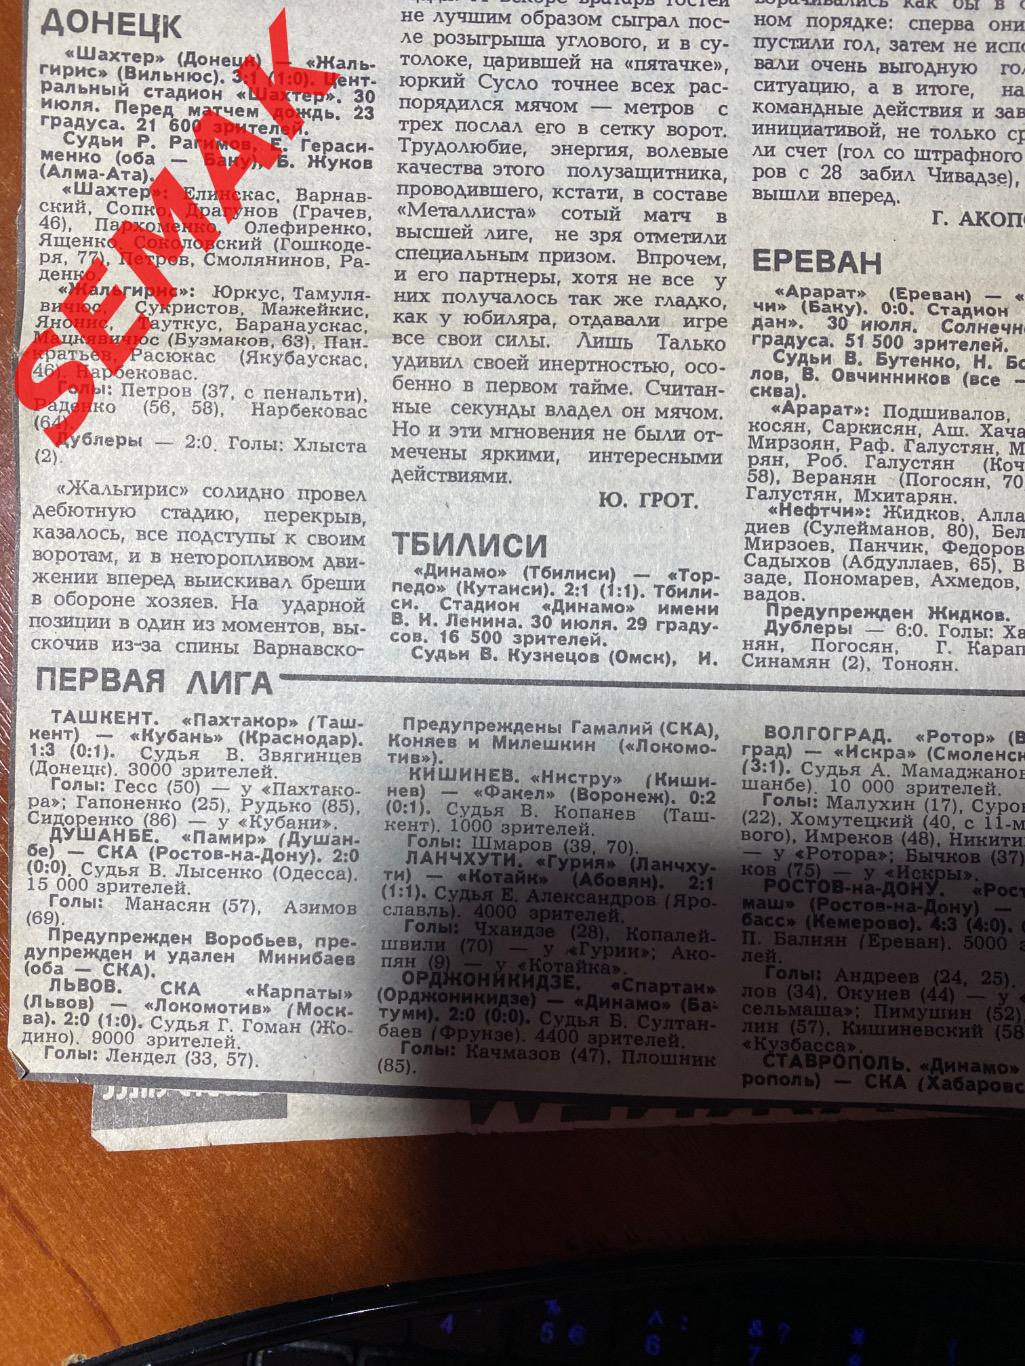 Шахтер Донецк - Жальгирис - 30.07.1986 отчет 1